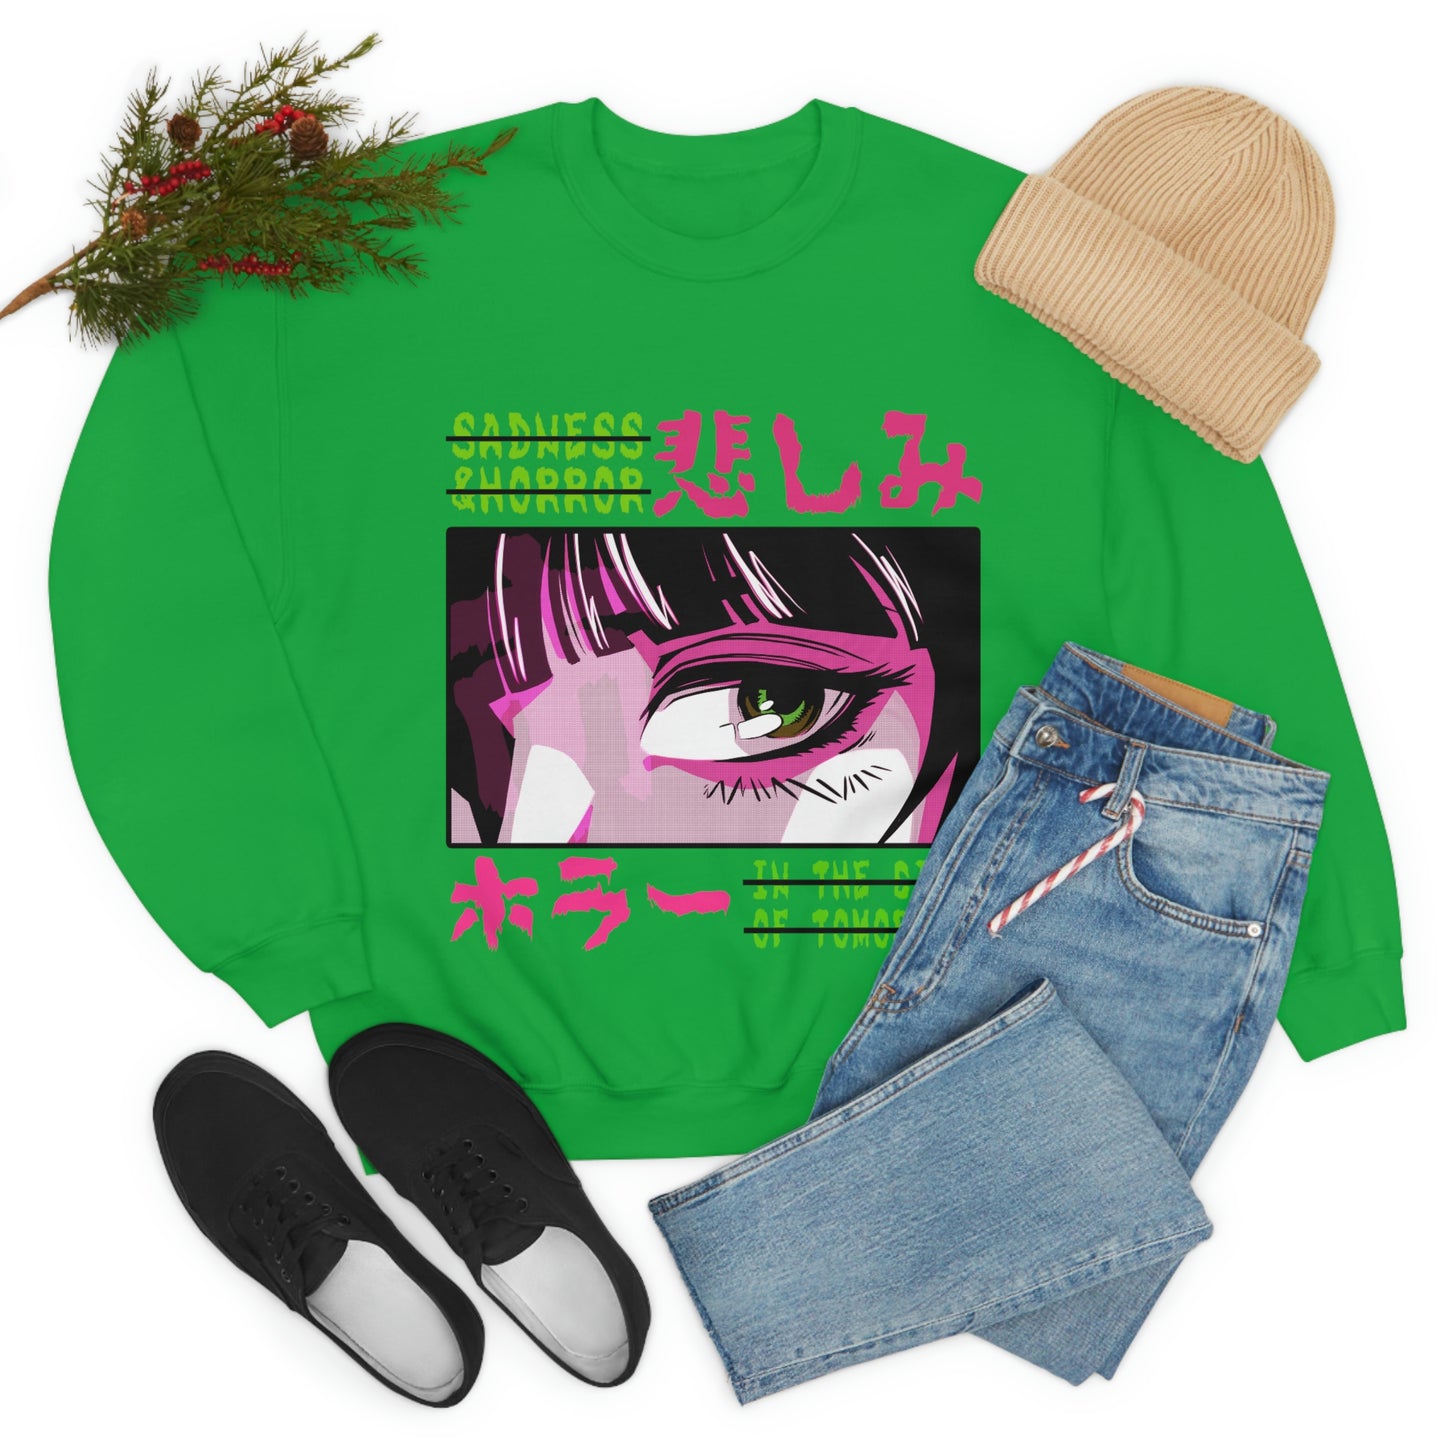 Kawaii Sweatshirt, Kawaii Clothing, Kawaii Clothes, Yami Kawaii Aesthetic, Pastel Kawaii Sweatshirt Sweatshirt